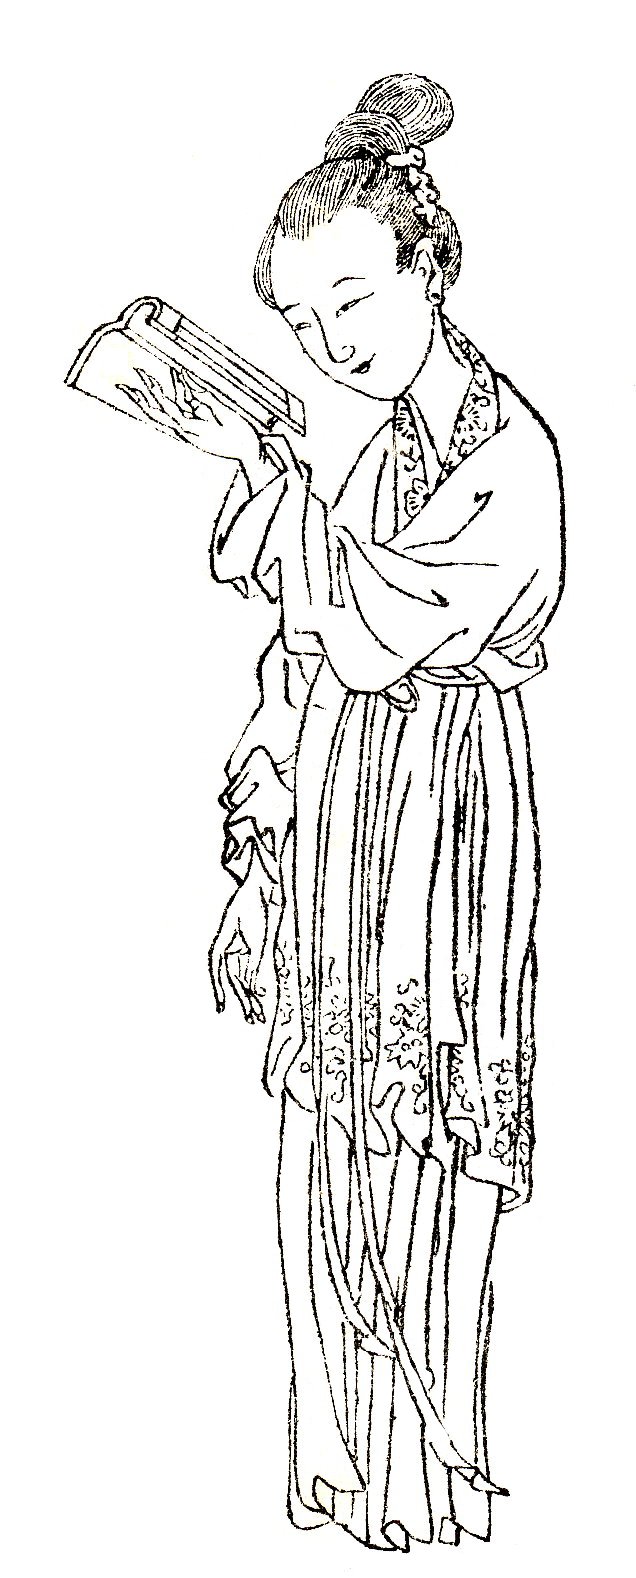 Image of Ban Zhao by Shangguan Zhou (上官周, b. 1665)